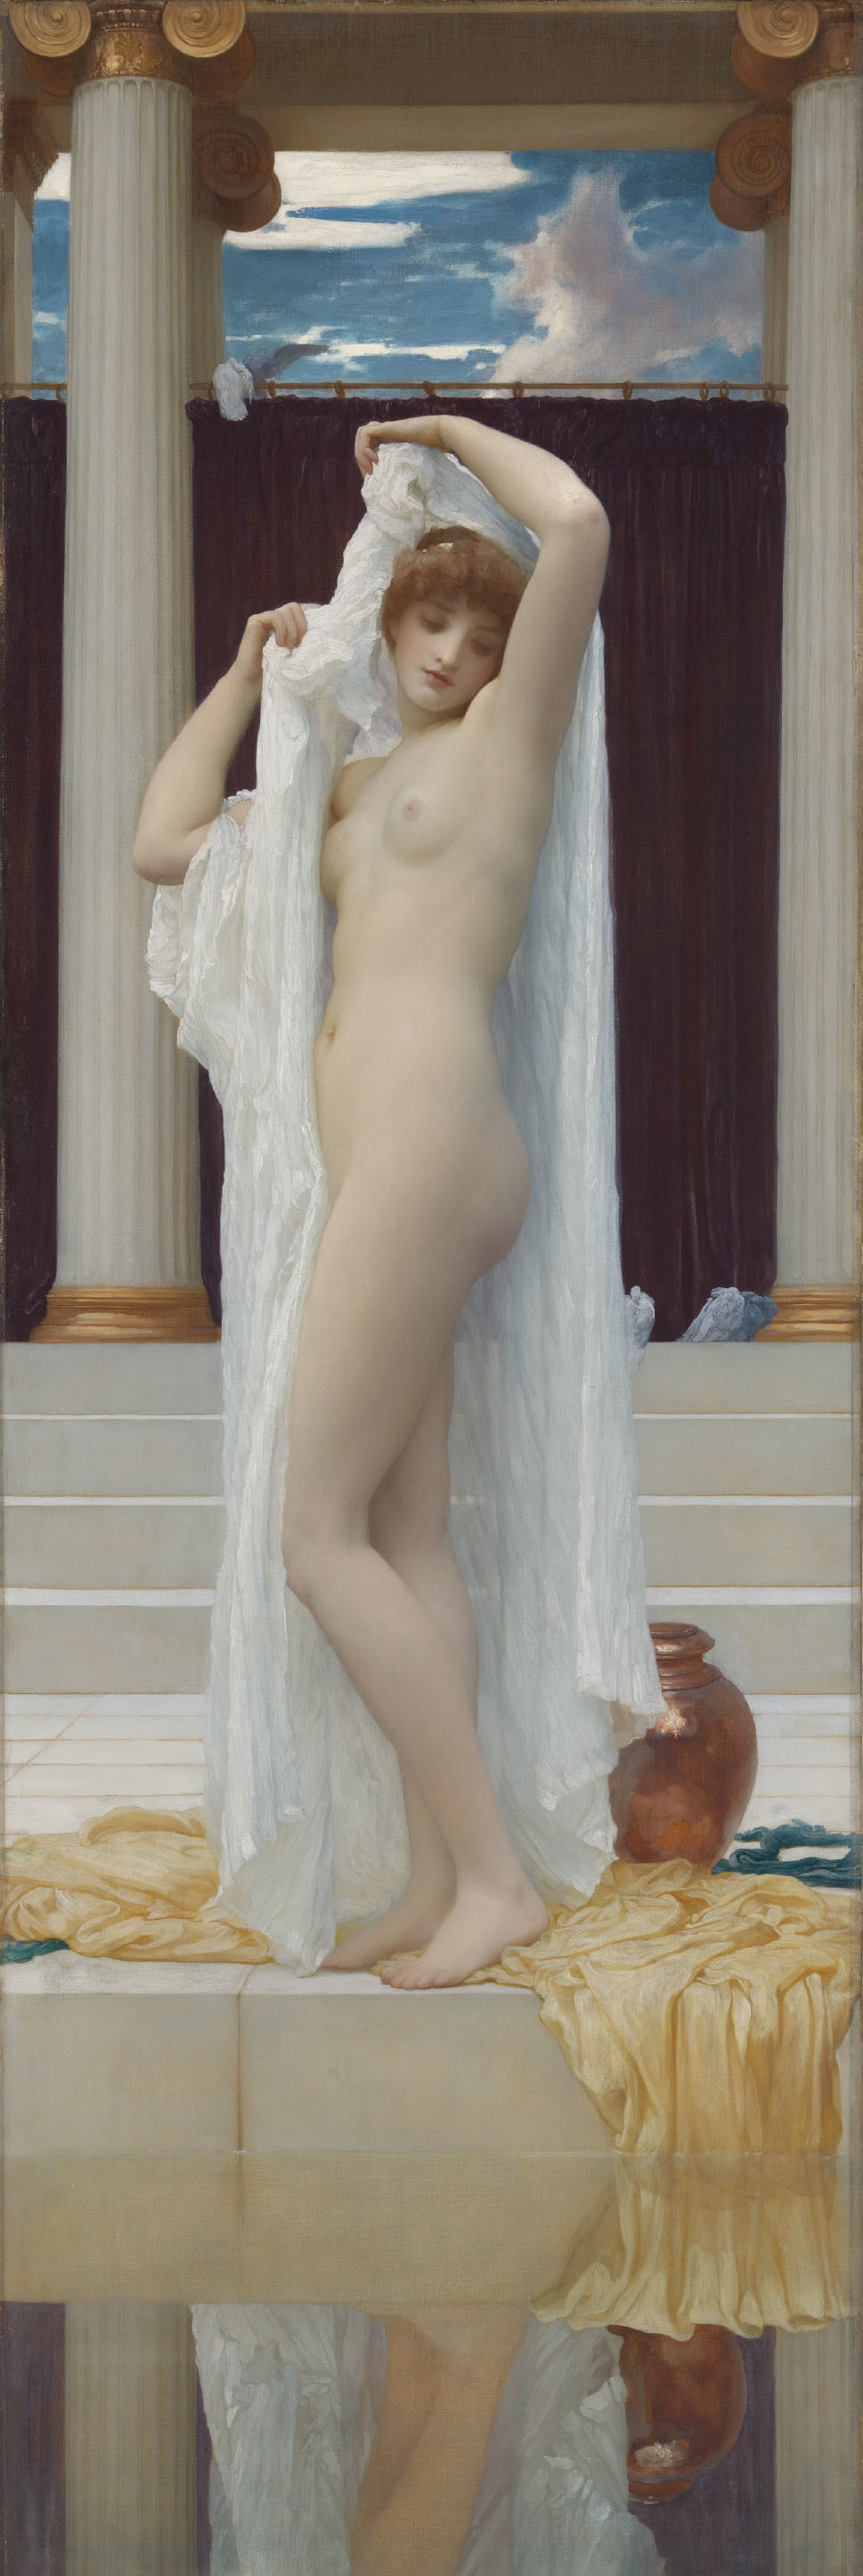 フレデリック・ロード・レイトン 《プシュケの水浴》 1890年発表 油彩／カンヴァス 189.2 × 62.2cm